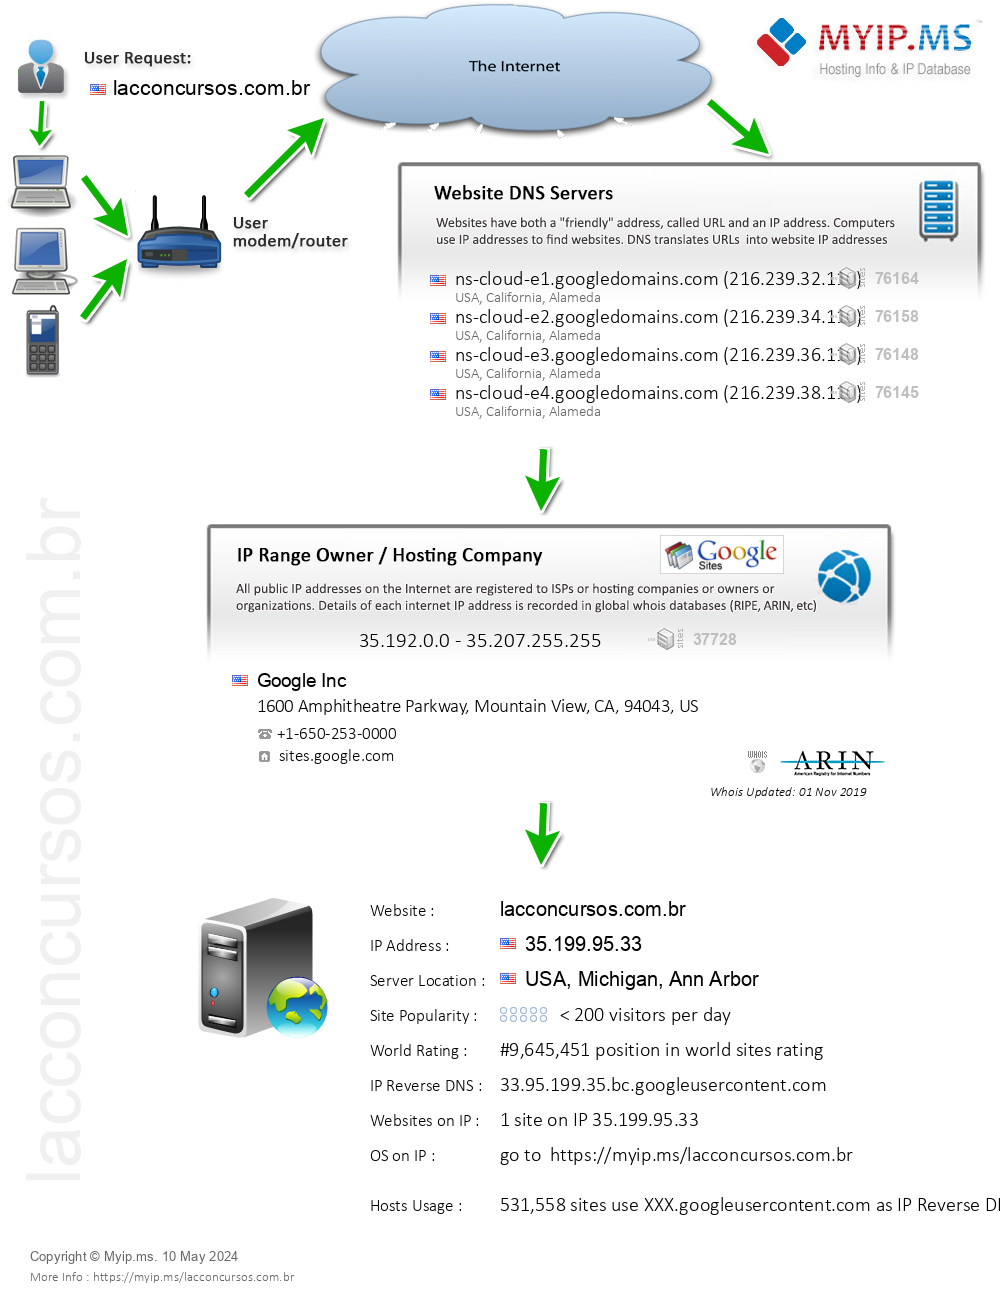 Lacconcursos.com.br - Website Hosting Visual IP Diagram